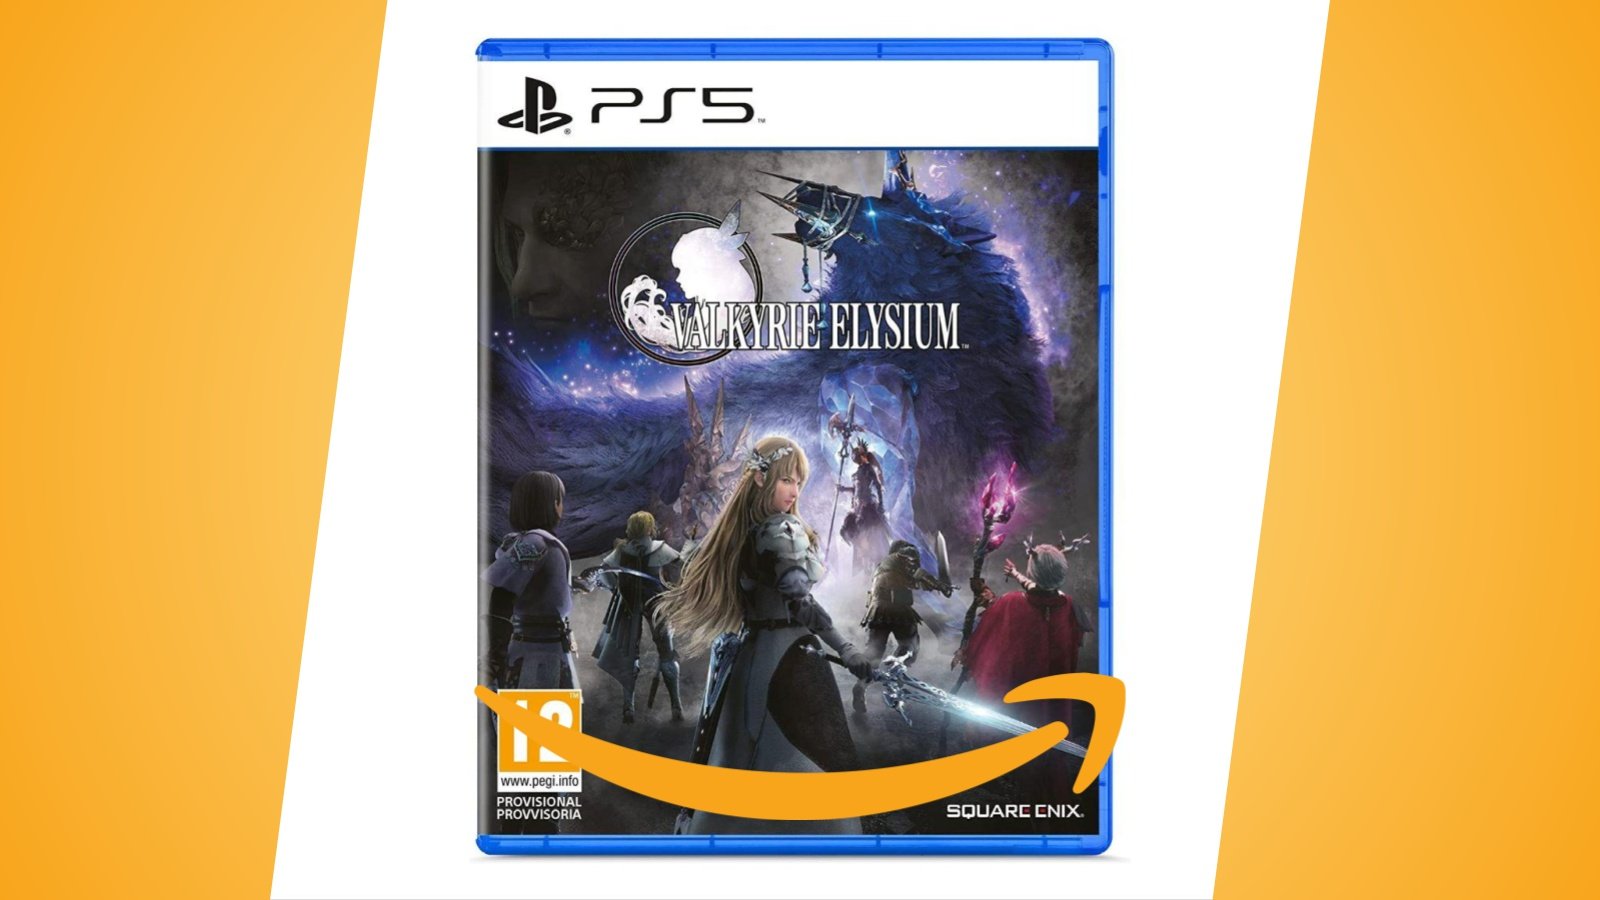 Offerte Amazon: Valkyrie Elysium per PS4 e PS5 è ora in sconto al prezzo minimo storico